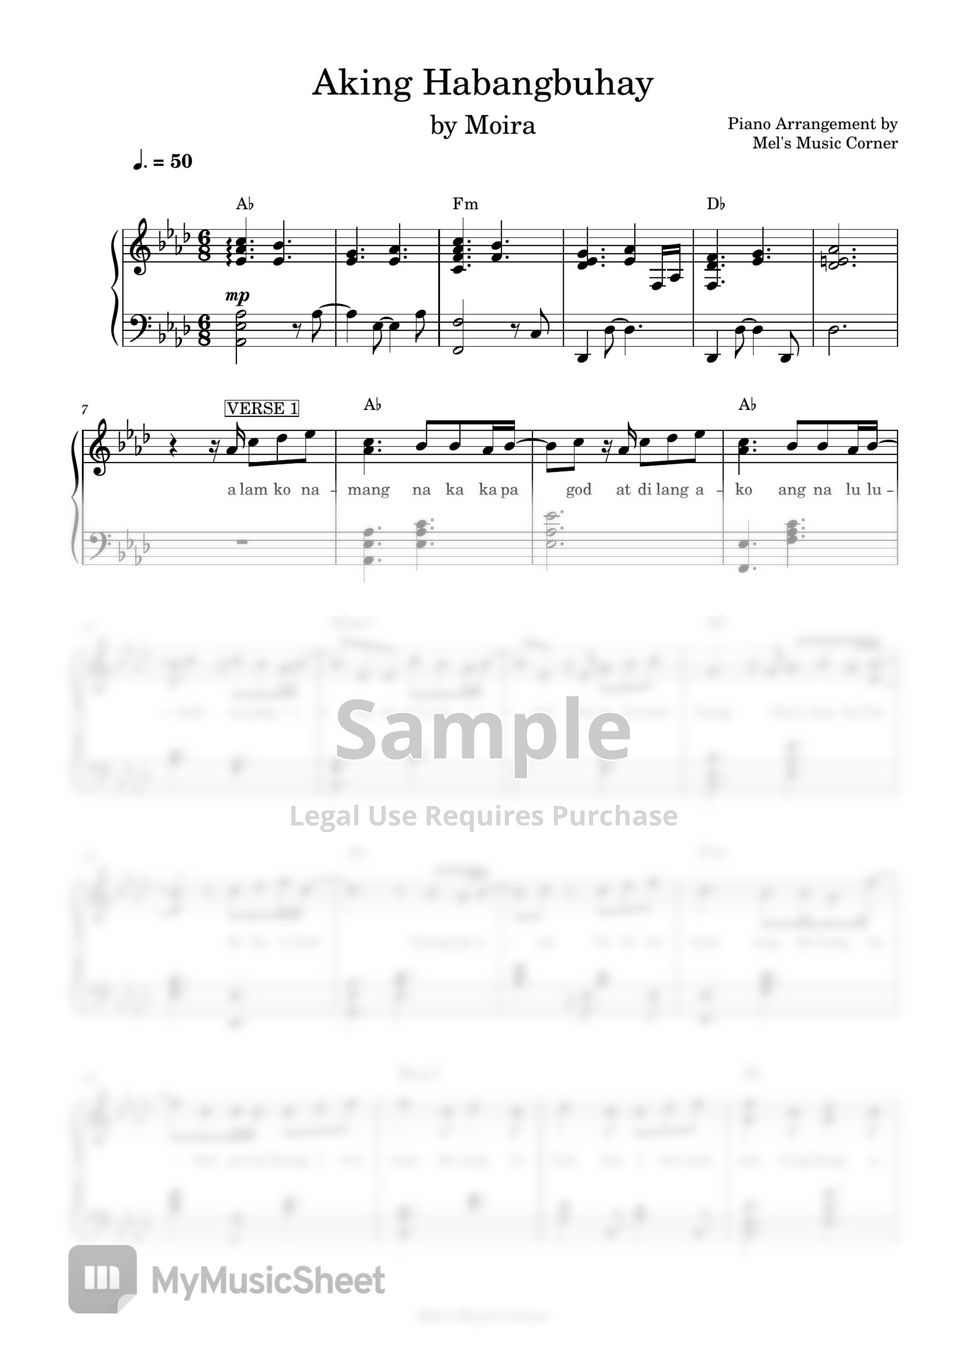 Moira dela Torre - Aking Habangbuhay (piano sheet music) by Mel's Music Corner